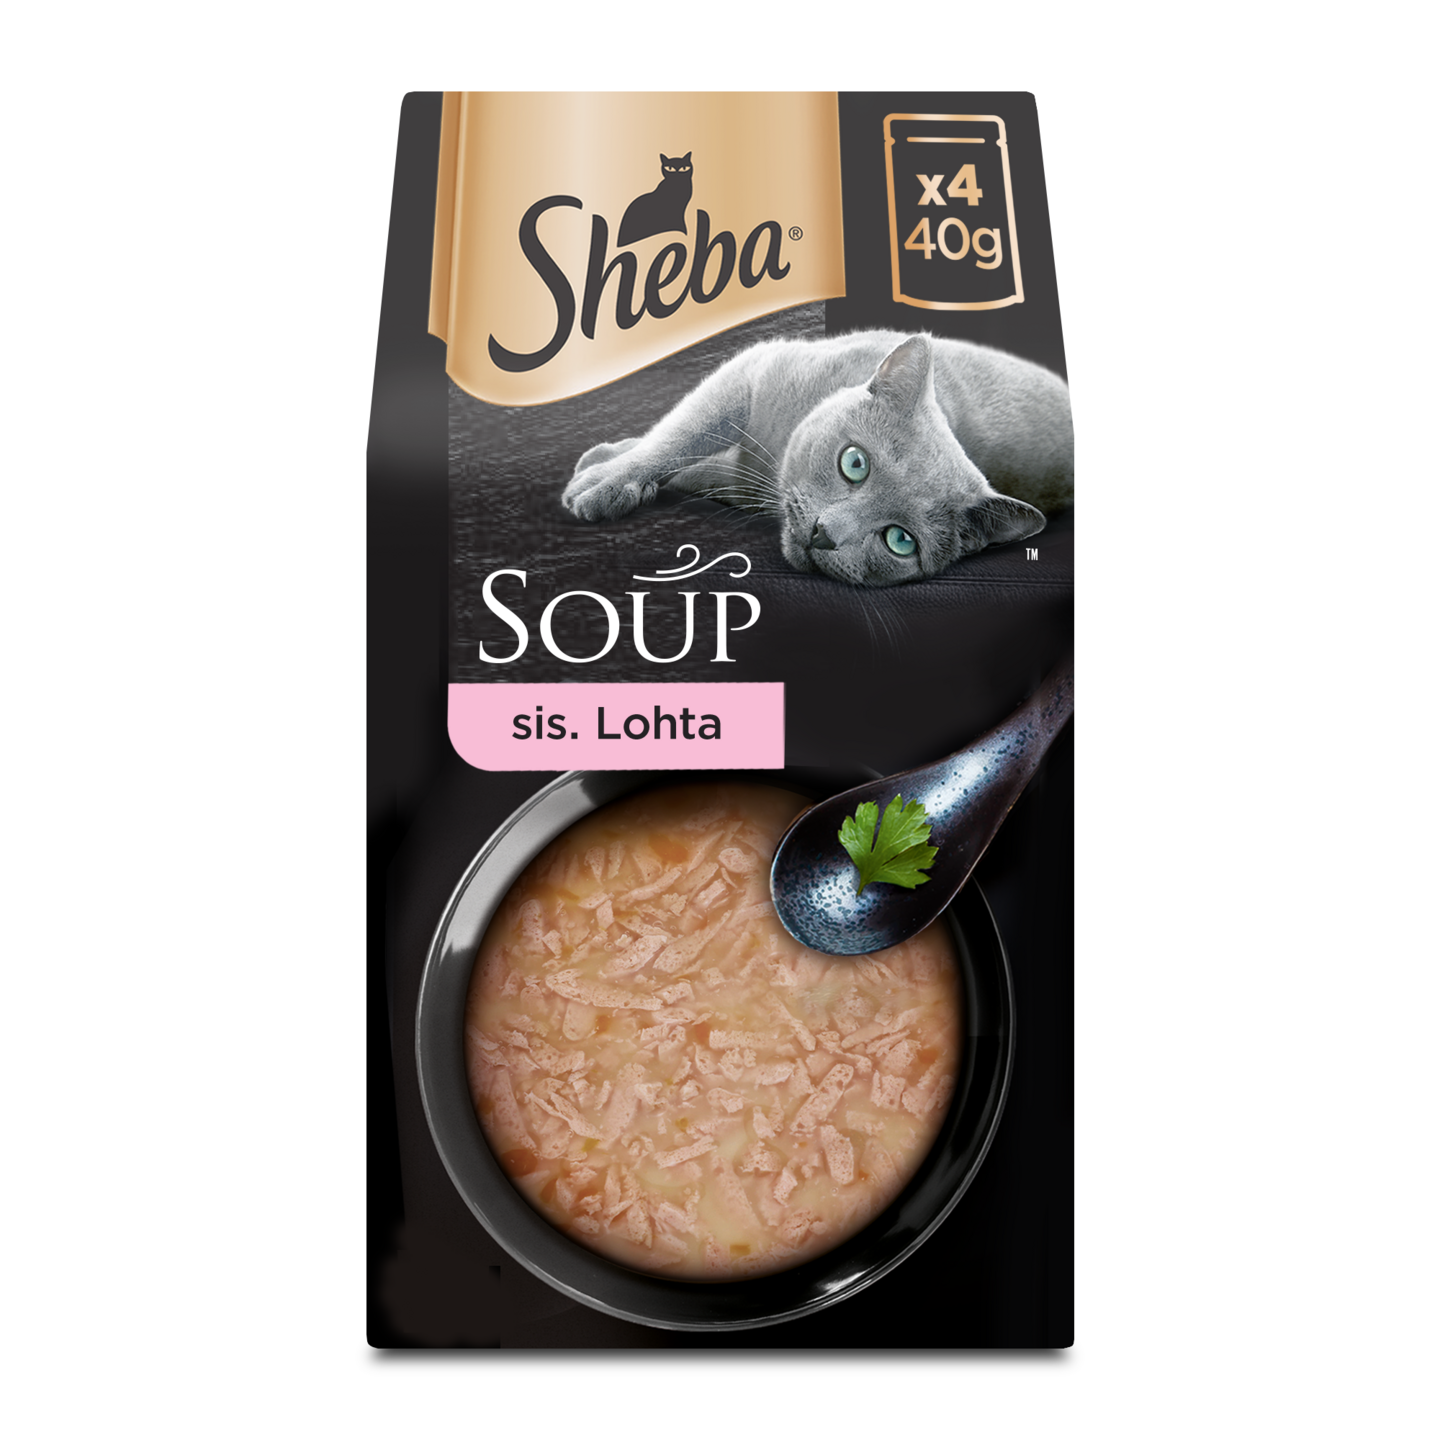 Sheba Soup lohi 4x40g